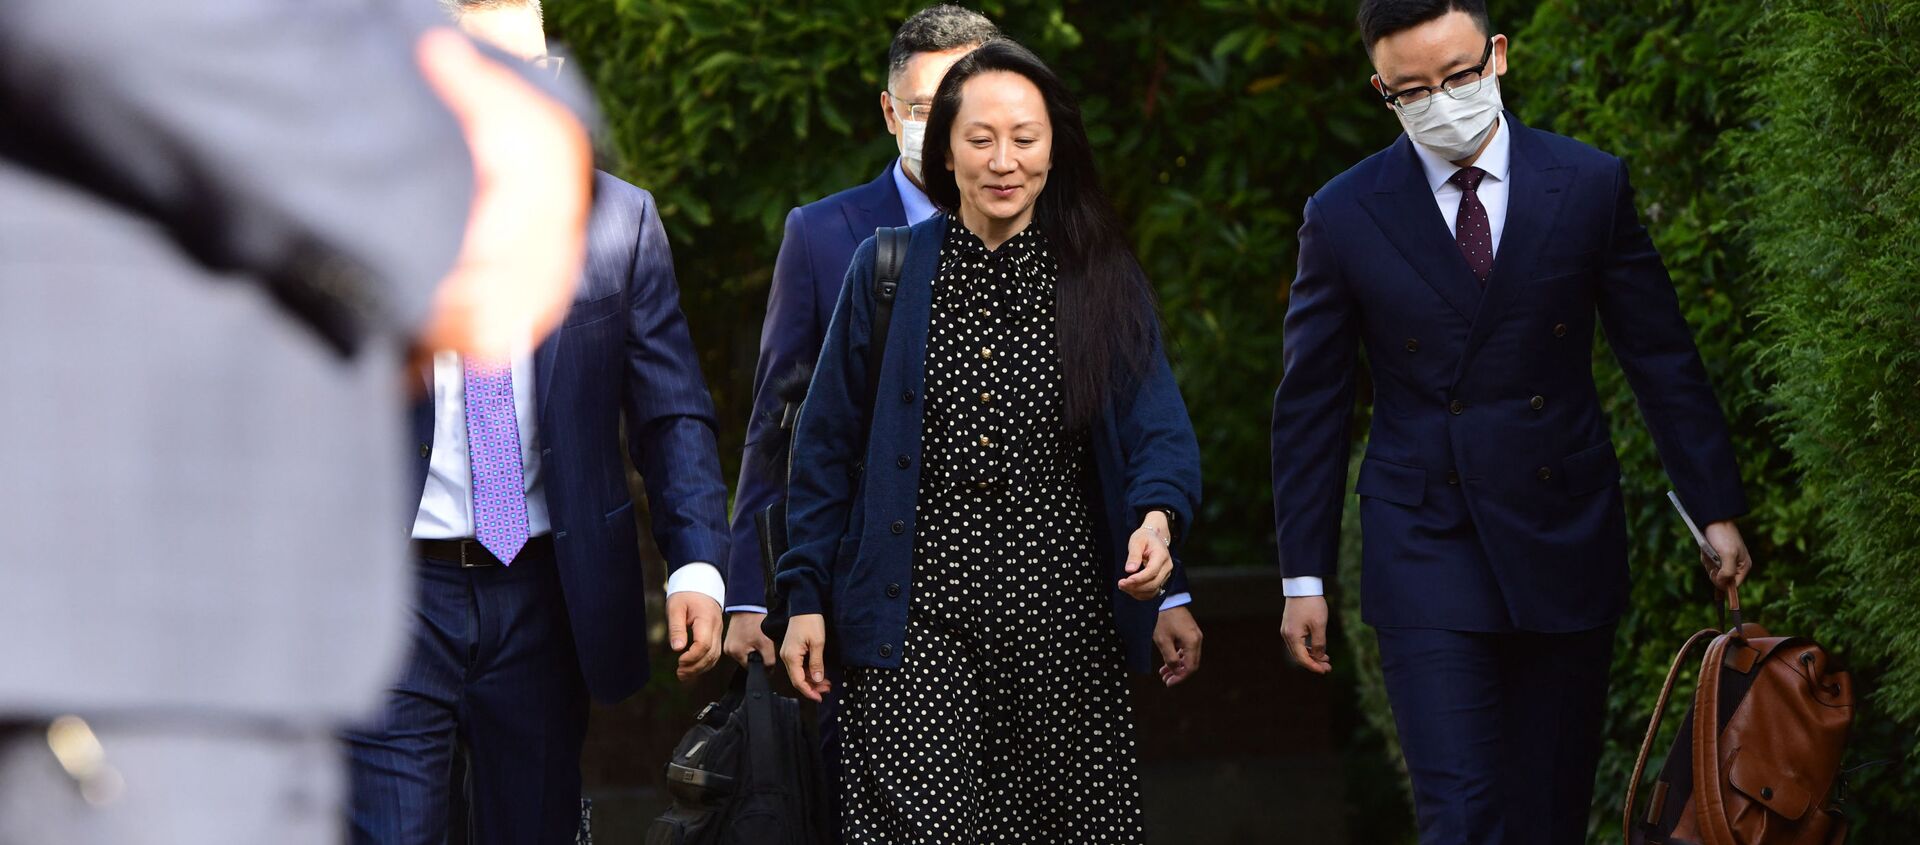 Финансовый директор Huawei Мэн Ваньчжоу покидает свой дом в Ванкувере, чтобы присутствовать на слушании по делу об экстрадиции - Sputnik Абхазия, 1920, 27.09.2021